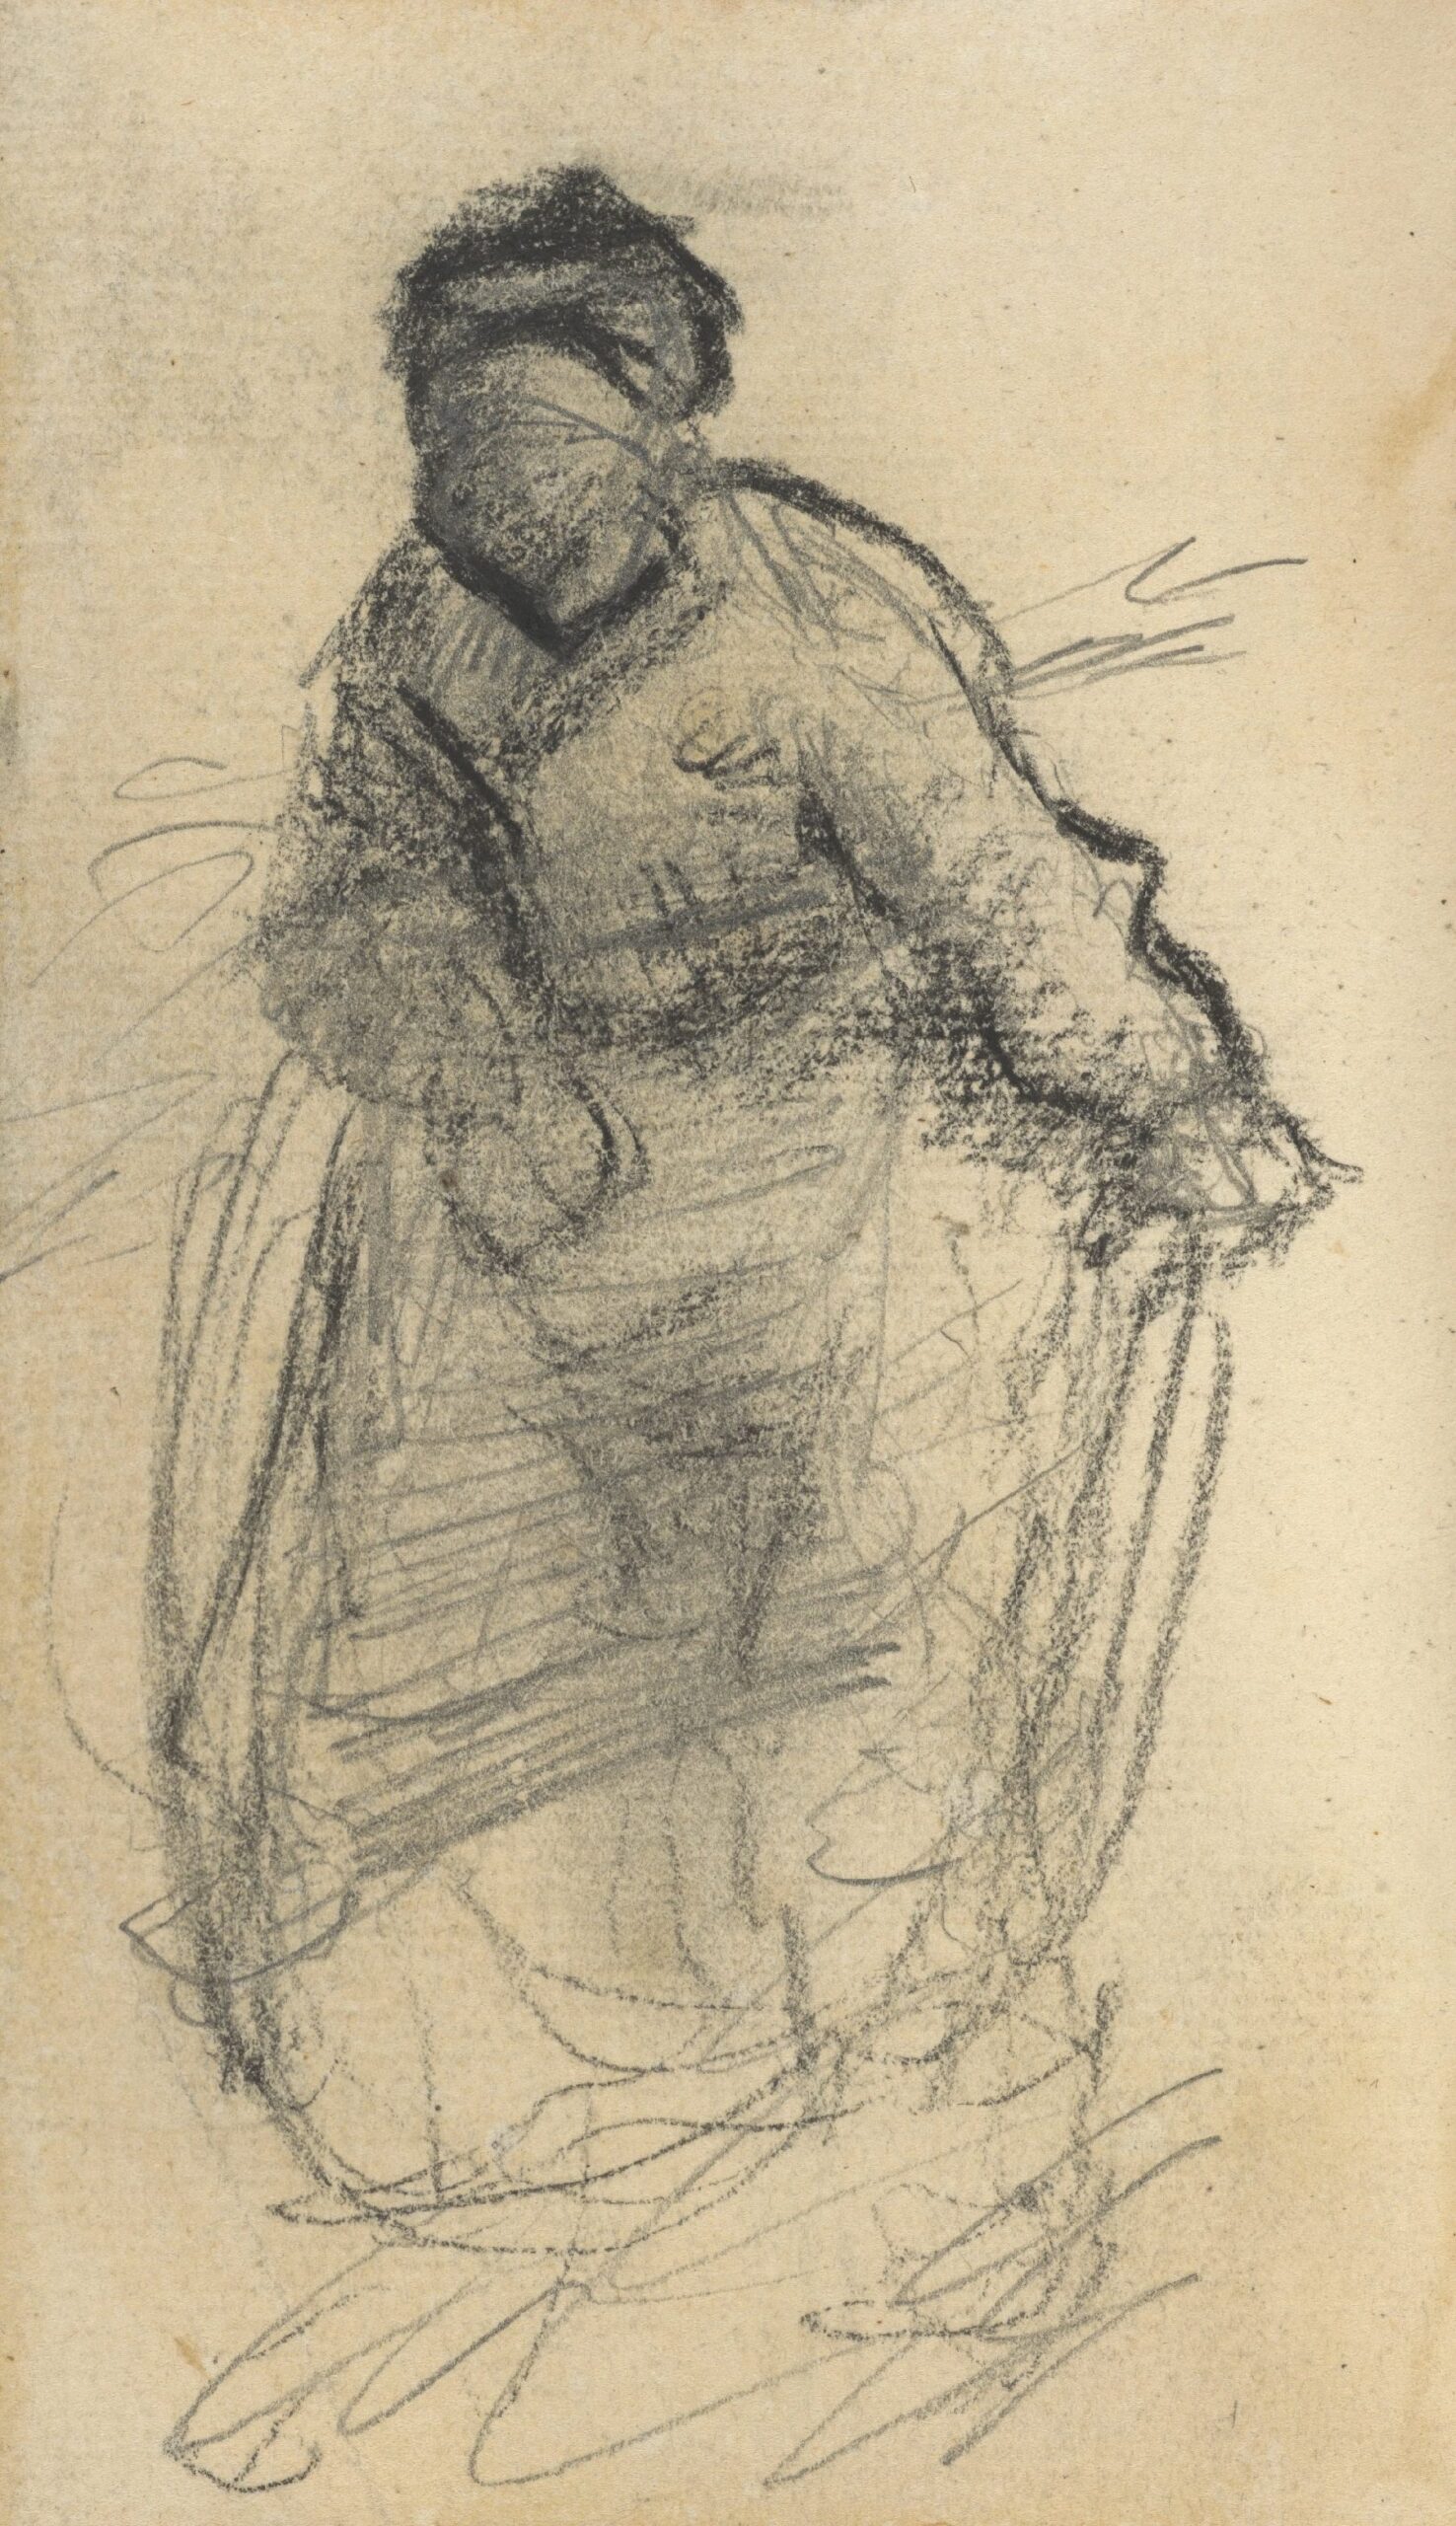 Vrouw Vincent van Gogh (1853 - 1890), Nuenen, mei-juni 1885